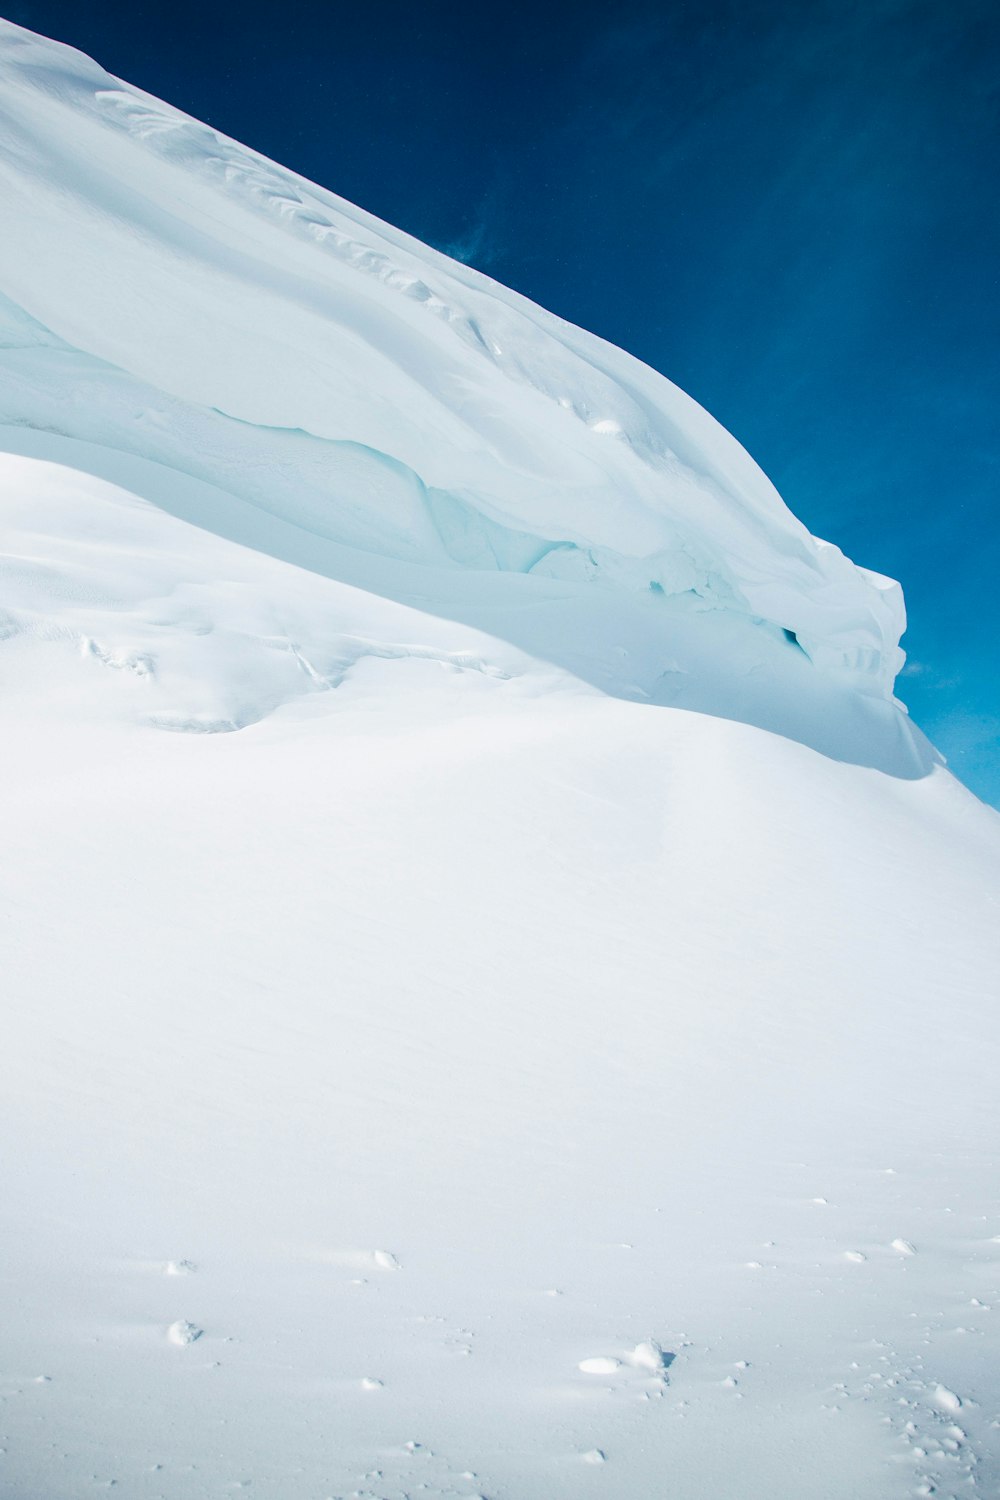 Montagna bianca coperta di neve sotto cielo blu durante il giorno